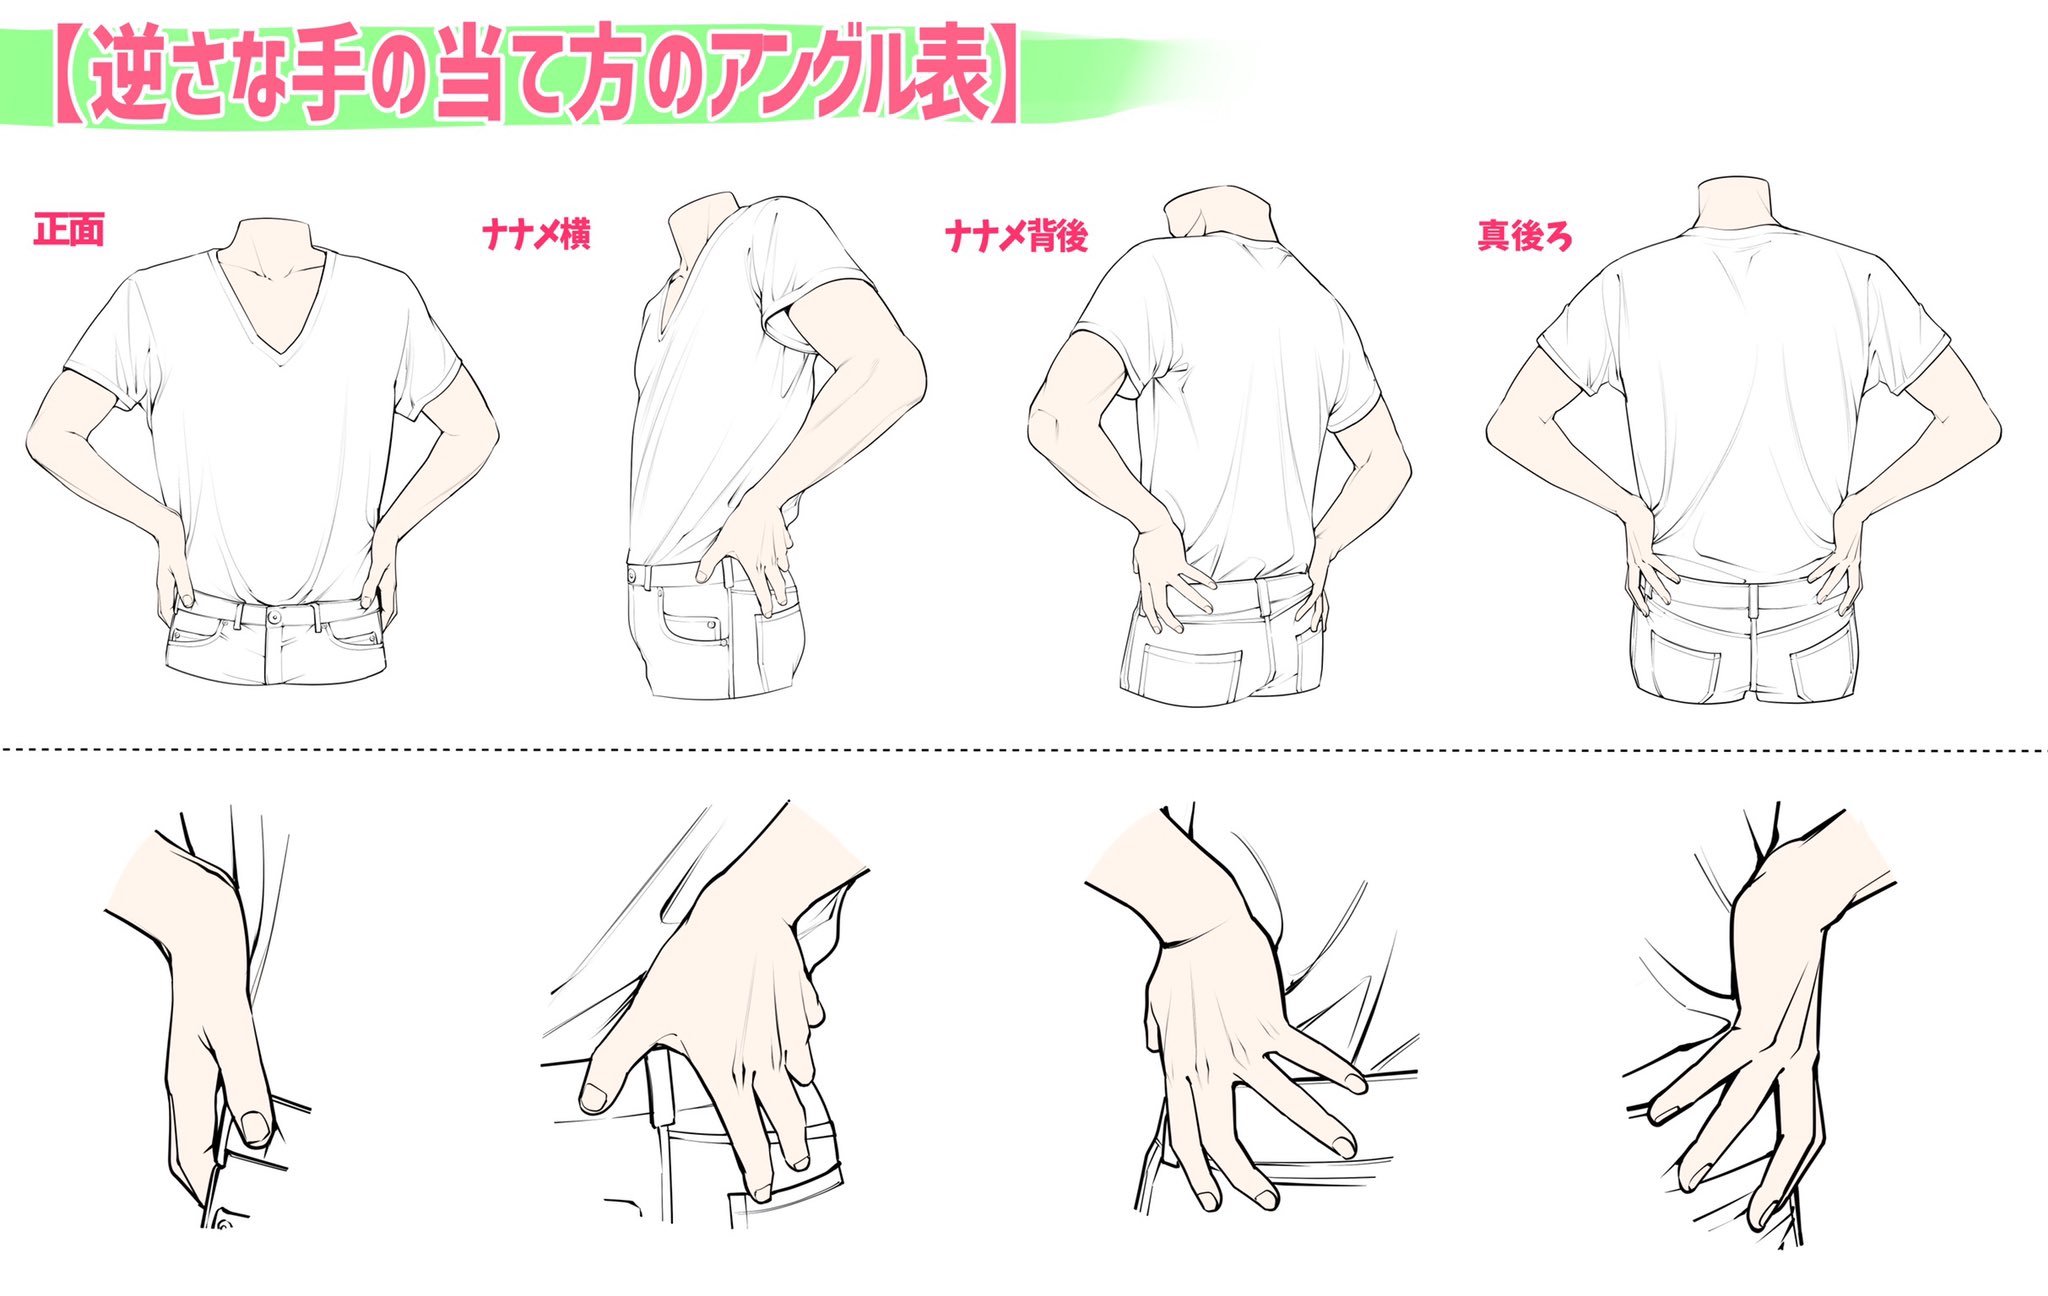 吉村拓也 イラスト講座 ポケットや腰に手を当てるポーズ 作画パターン図解 作りました ご自由に練習にお使いください